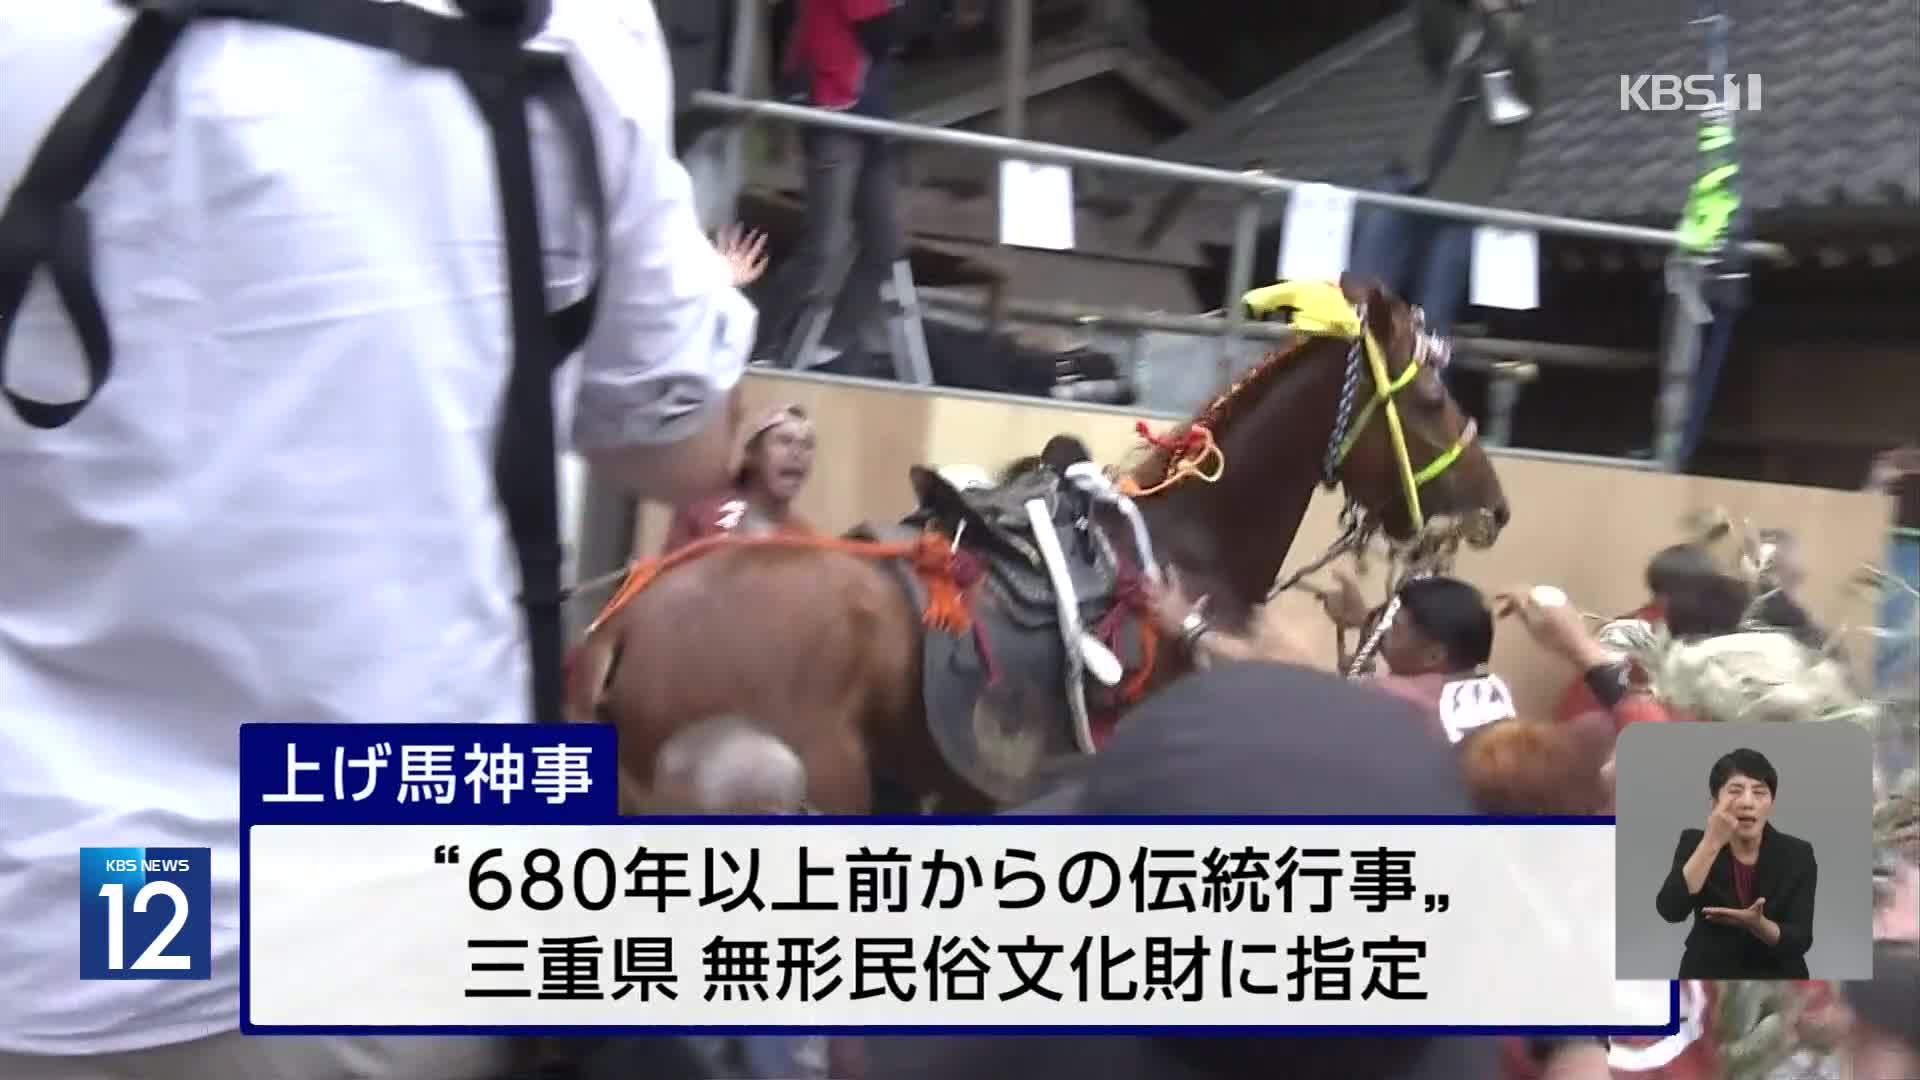 일본, 말 동원 전통 행사 ‘동물 학대’ 비판